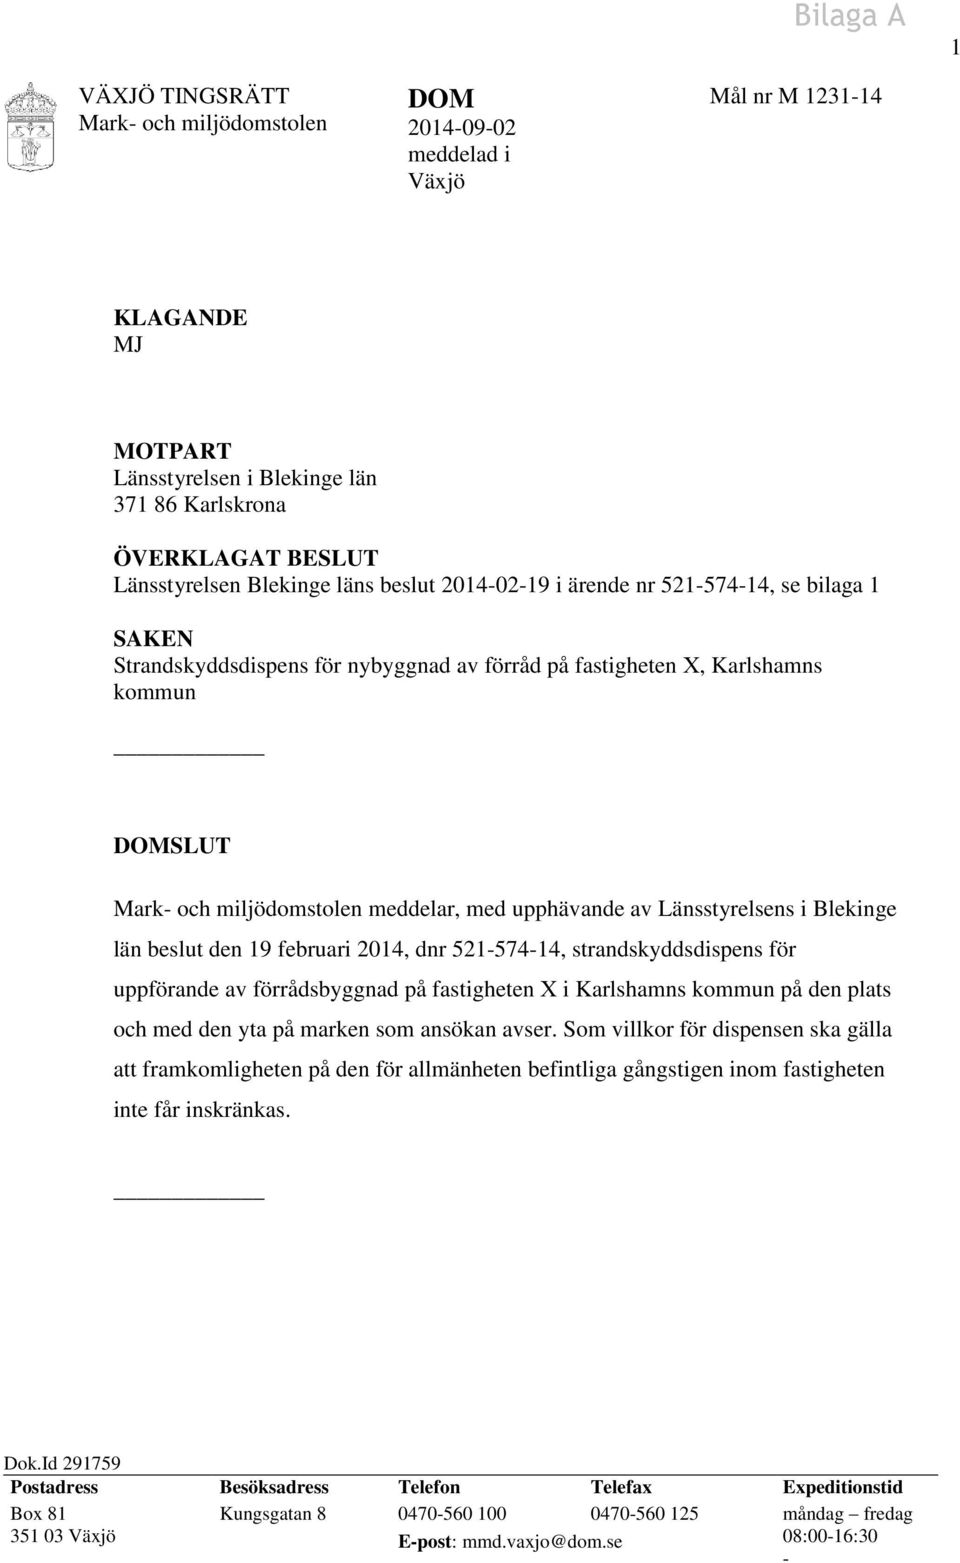 med upphävande av Länsstyrelsens i Blekinge län beslut den 19 februari 2014, dnr 521-574-14, strandskyddsdispens för uppförande av förrådsbyggnad på fastigheten X i Karlshamns kommun på den plats och